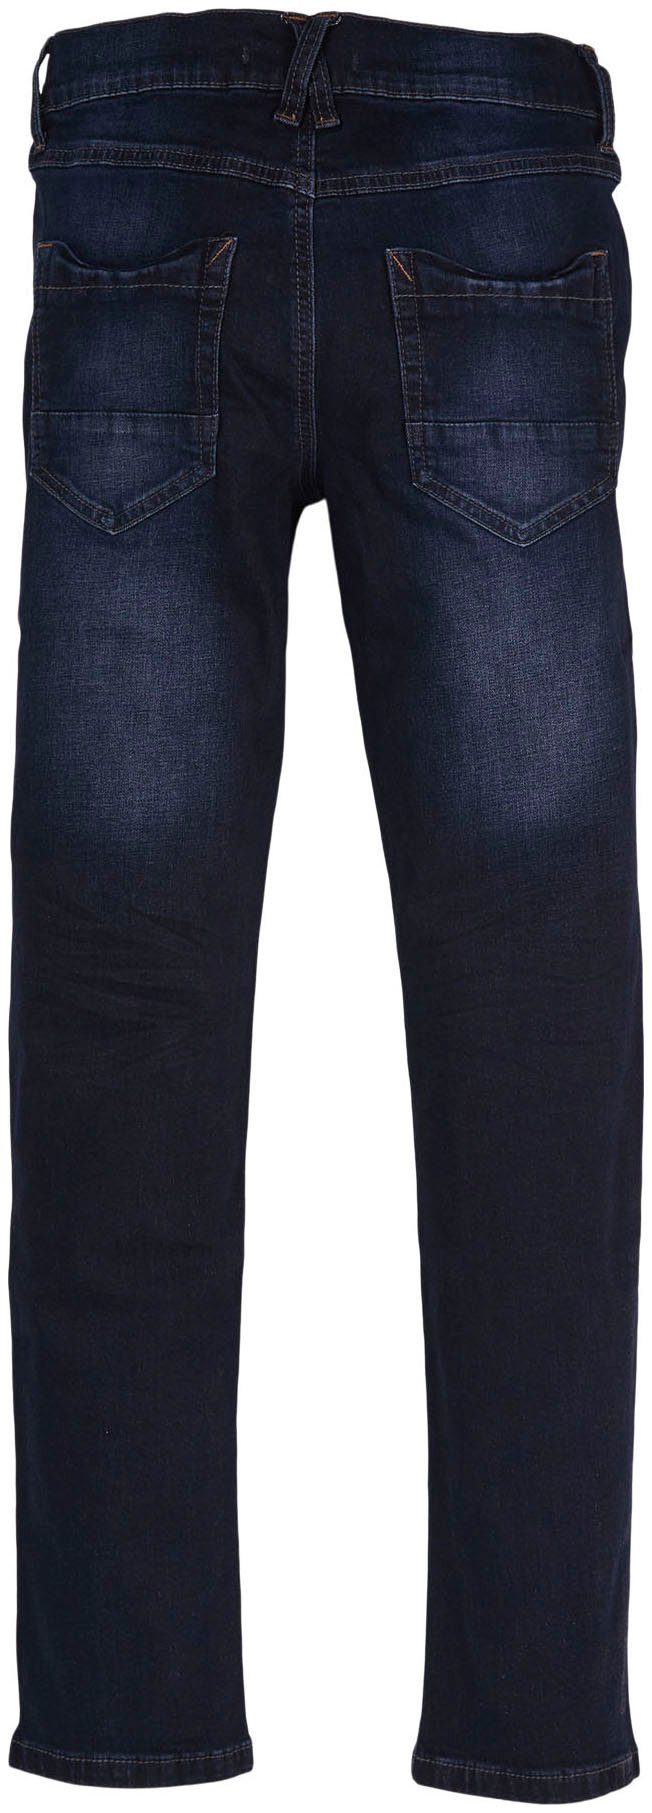 Junior Elasthan-Anteil Skinny-fit-Jeans, mit s.Oliver Baumwollmischung